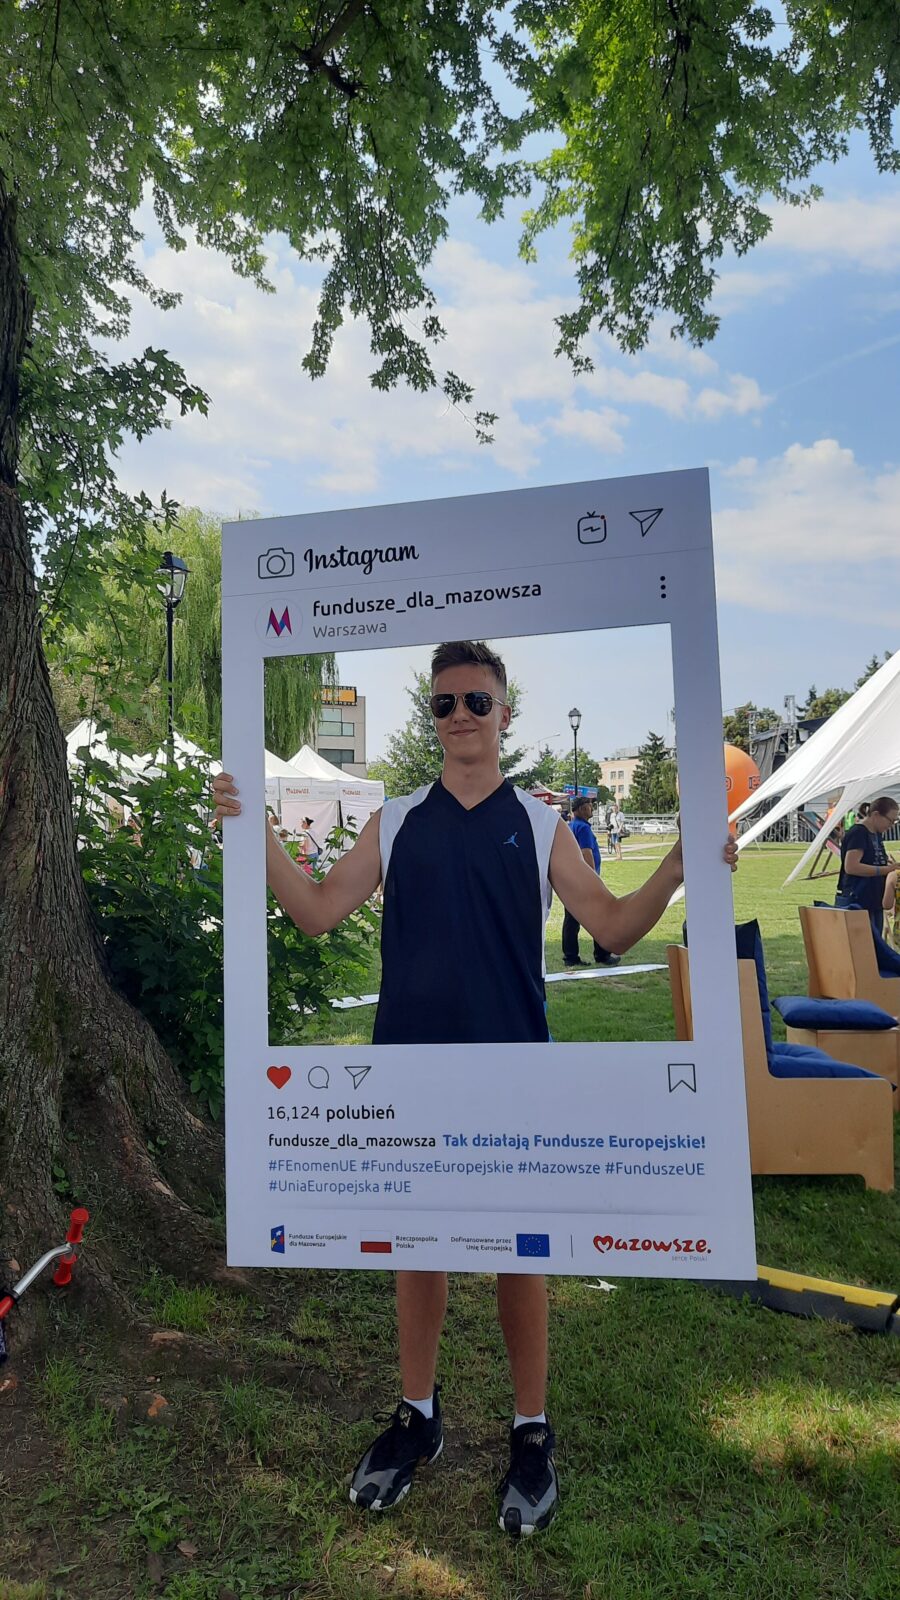 Uczestnik pikniku pozujący z planszą przedstawiającą post na Instagramie profilu Fundusze dla Mazowsza.